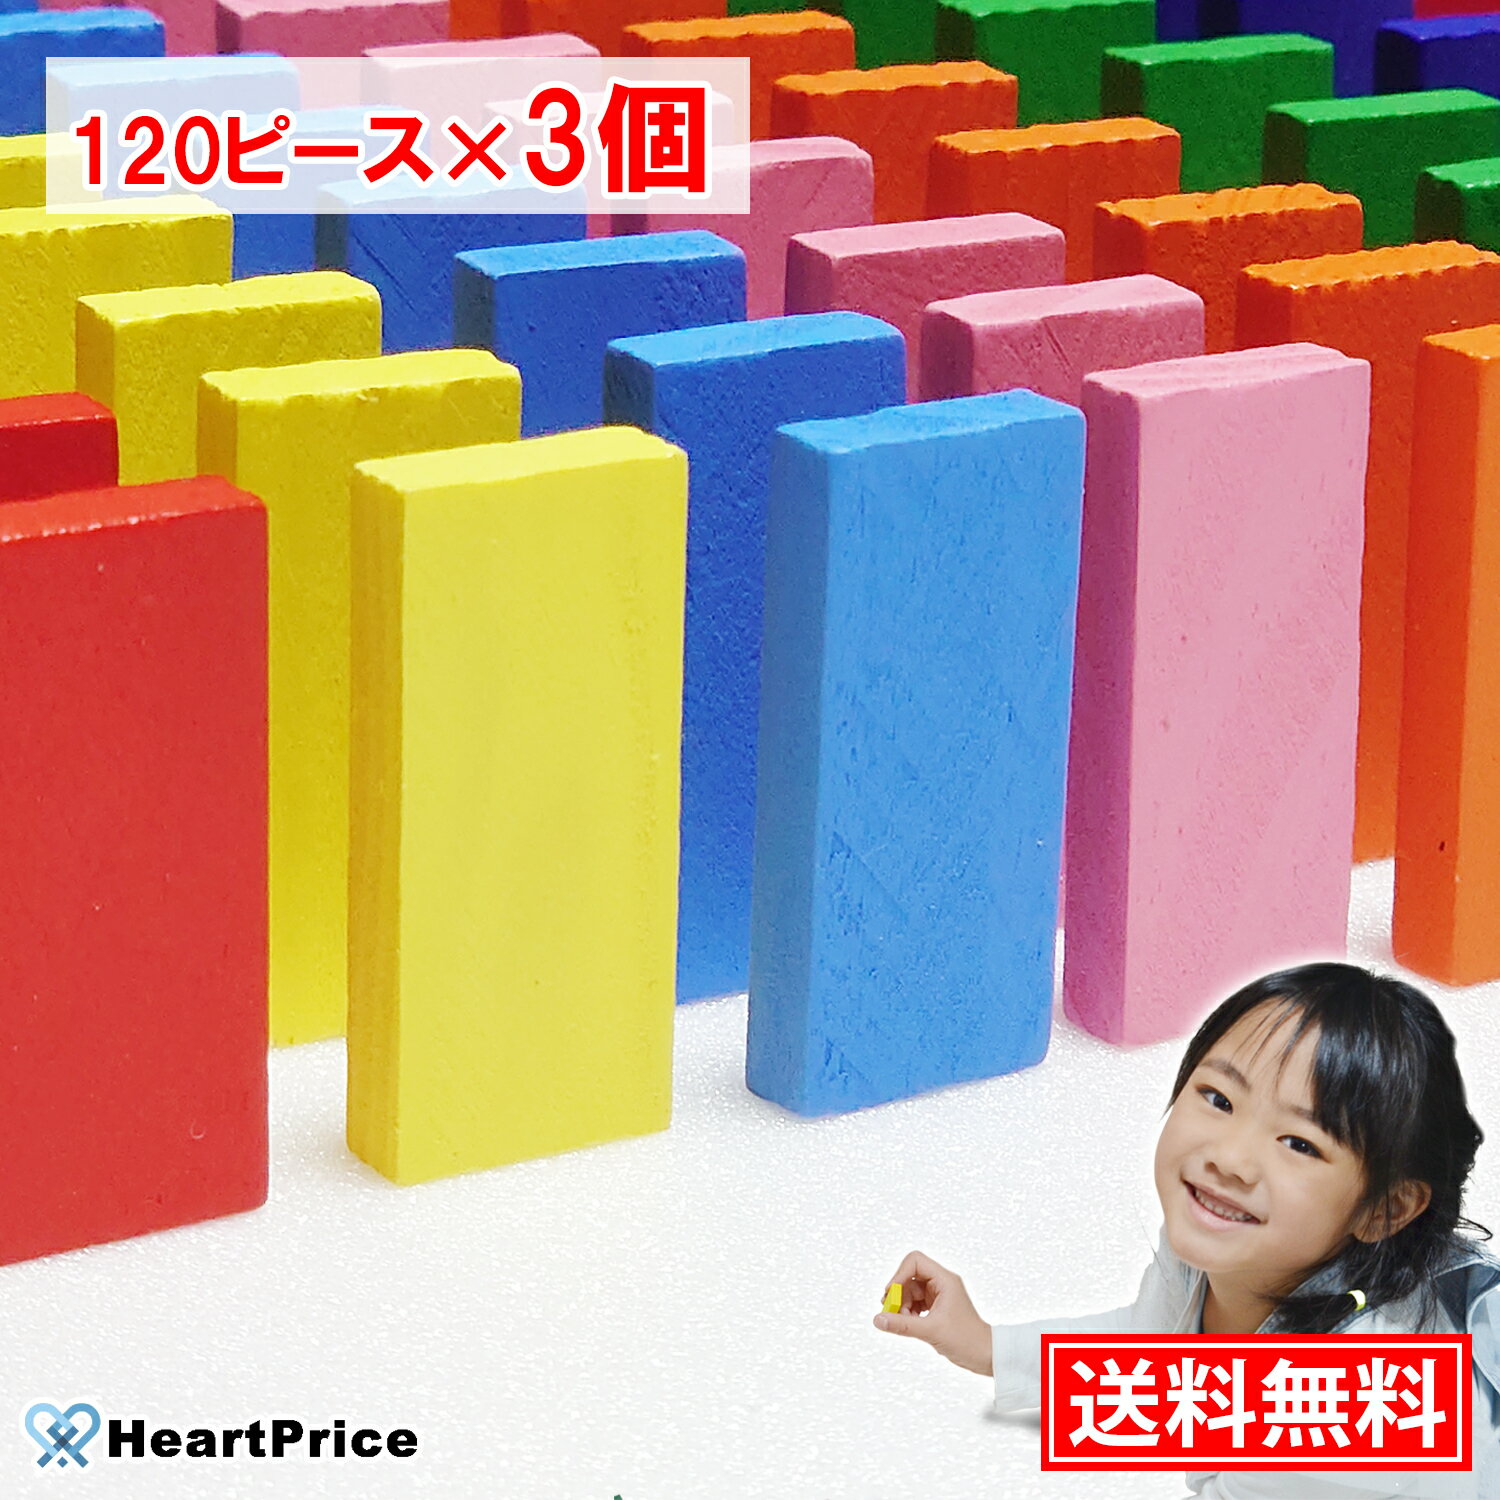 ドミノ おもちゃ ドミノ倒し 360ピース (120ピース×3個) 12色セット まとめ買い 積み木 知育玩具 木製 女の子 誕生日…